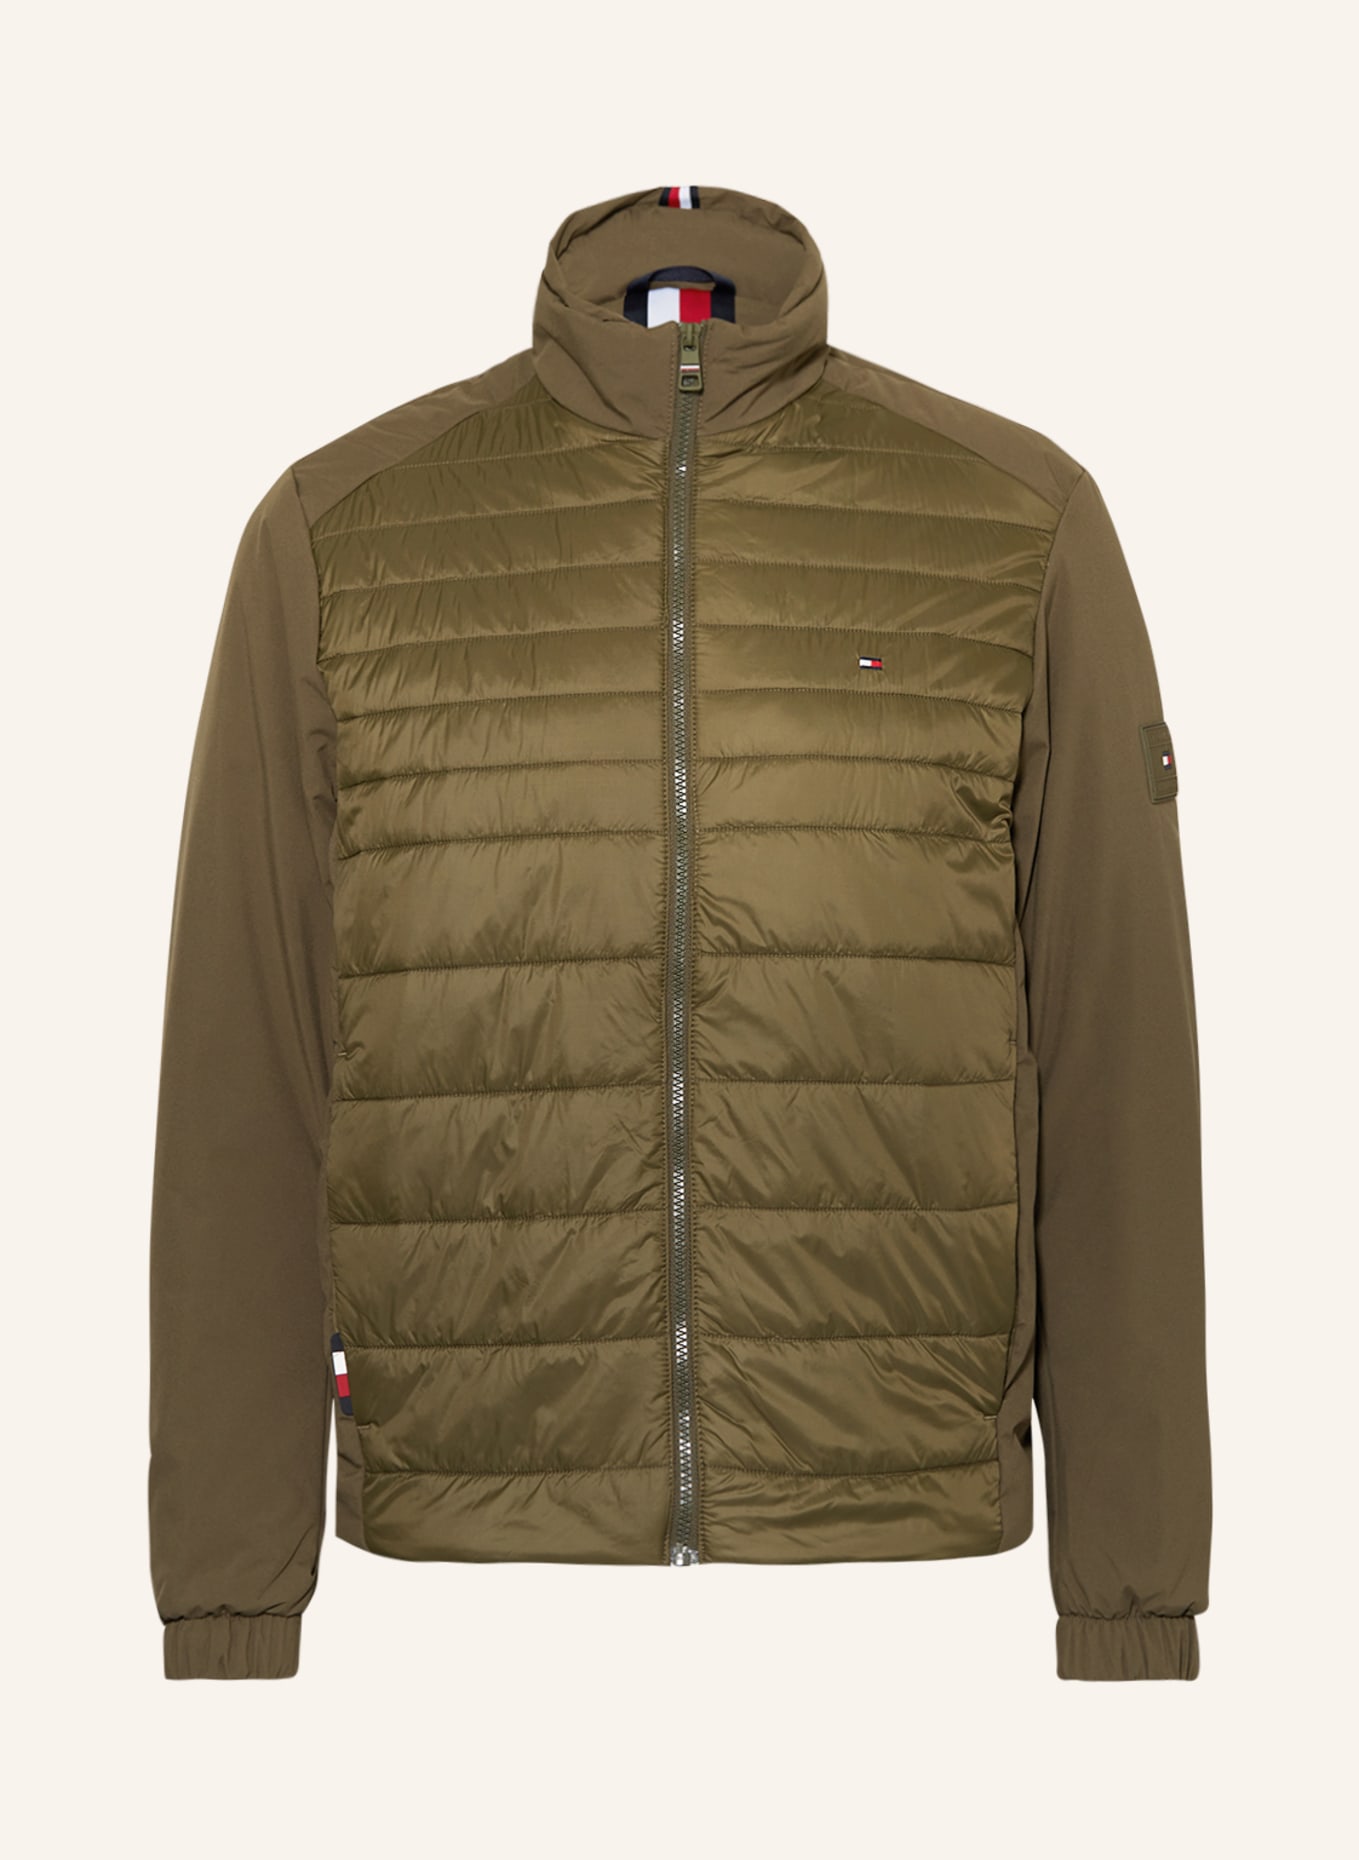 TOMMY HILFIGER Quilted jacket, Color: OLIVE (Image 1)